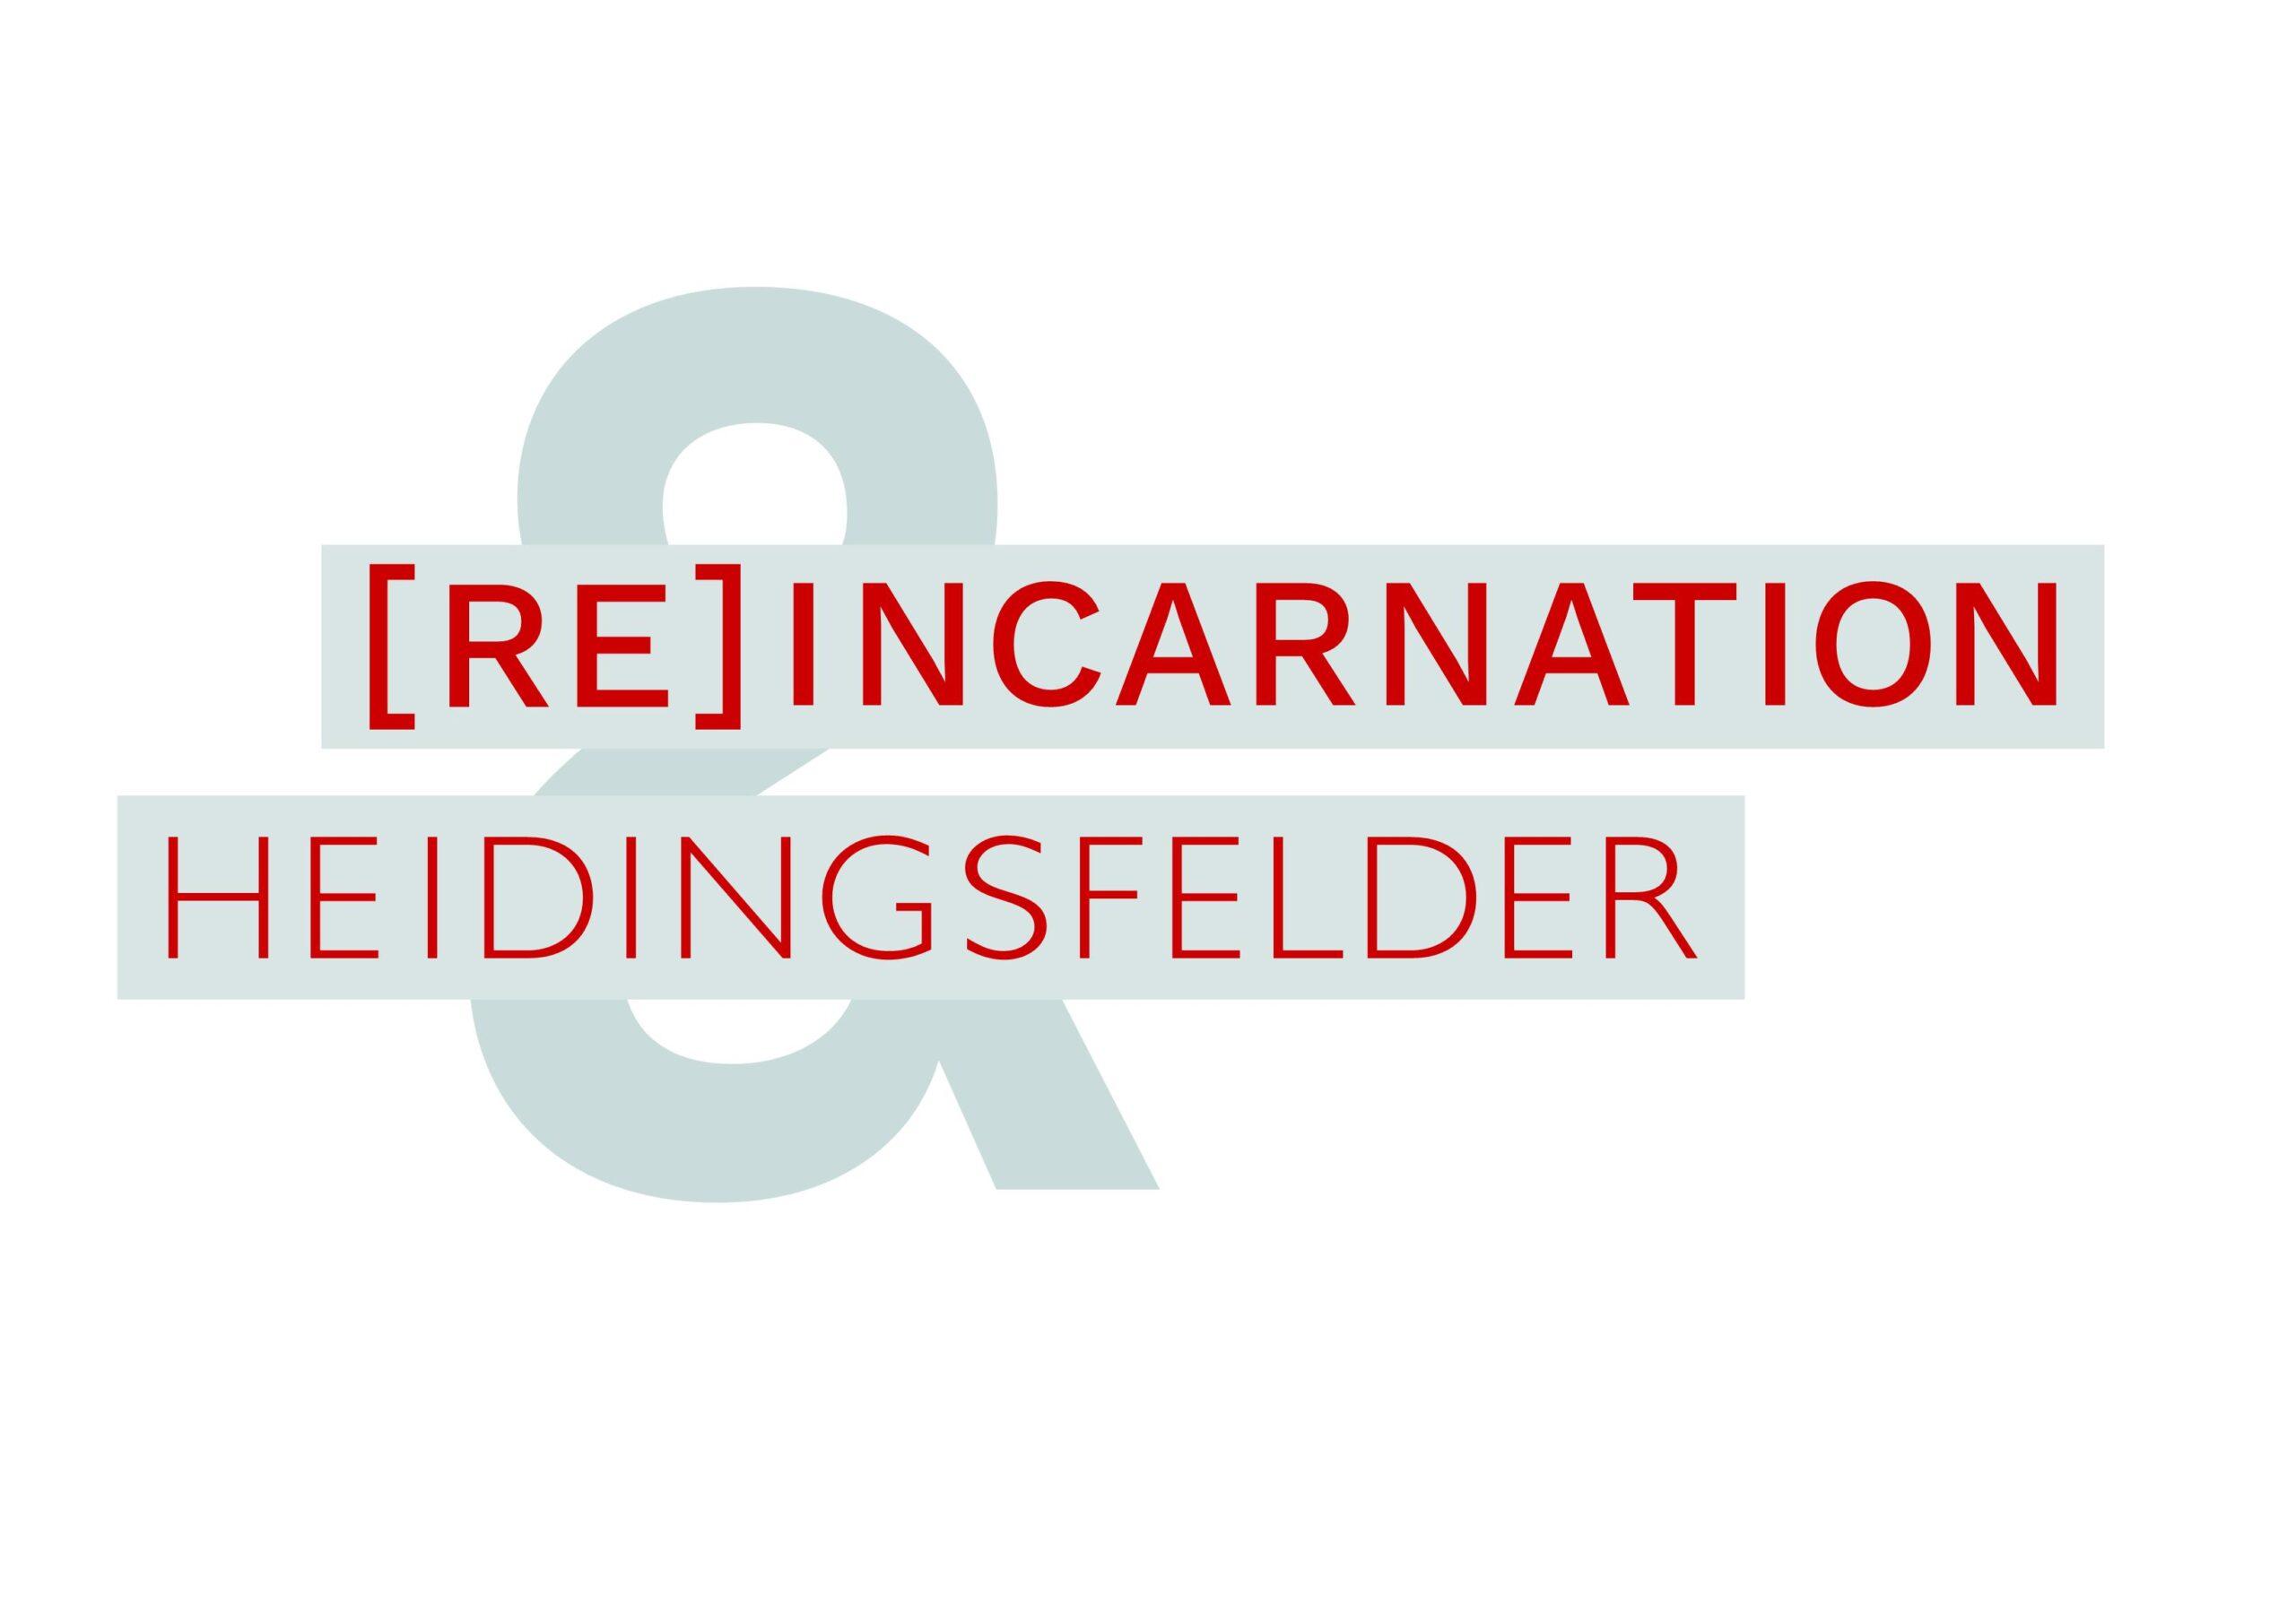 HEIDINGSFELDER & [RE]INCARNATION